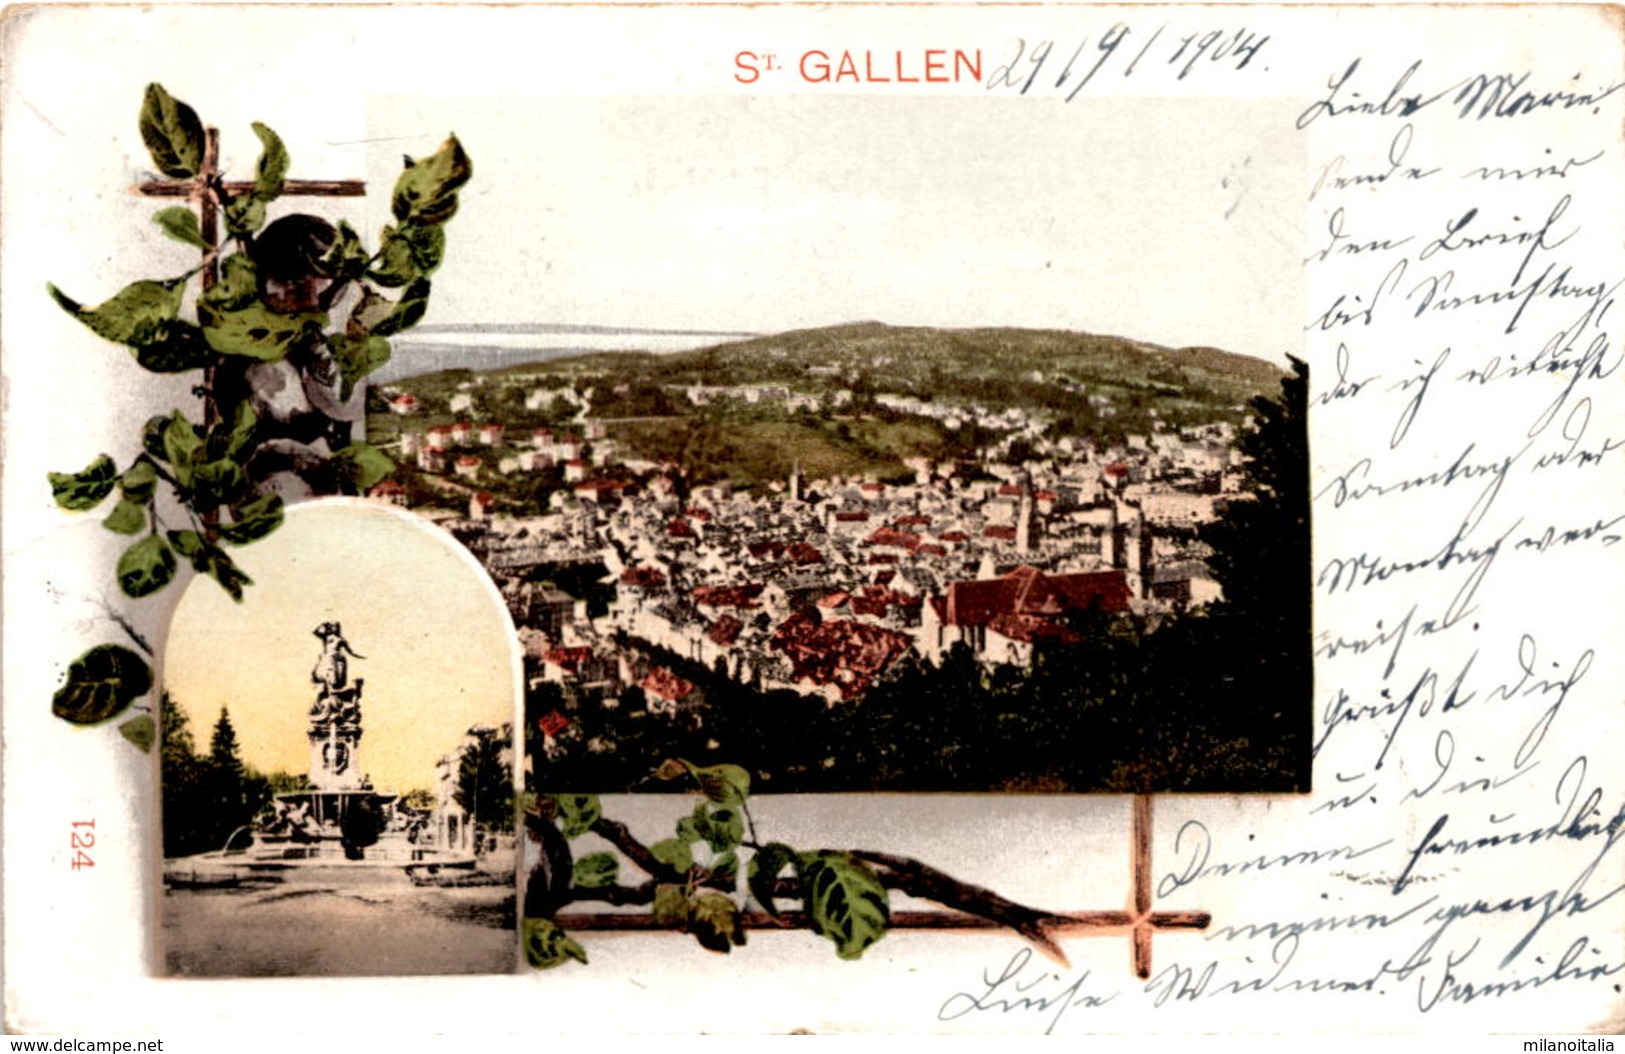 St. Gallen - 2 Bilder (124) * 29. 9. 1904 - St. Gallen